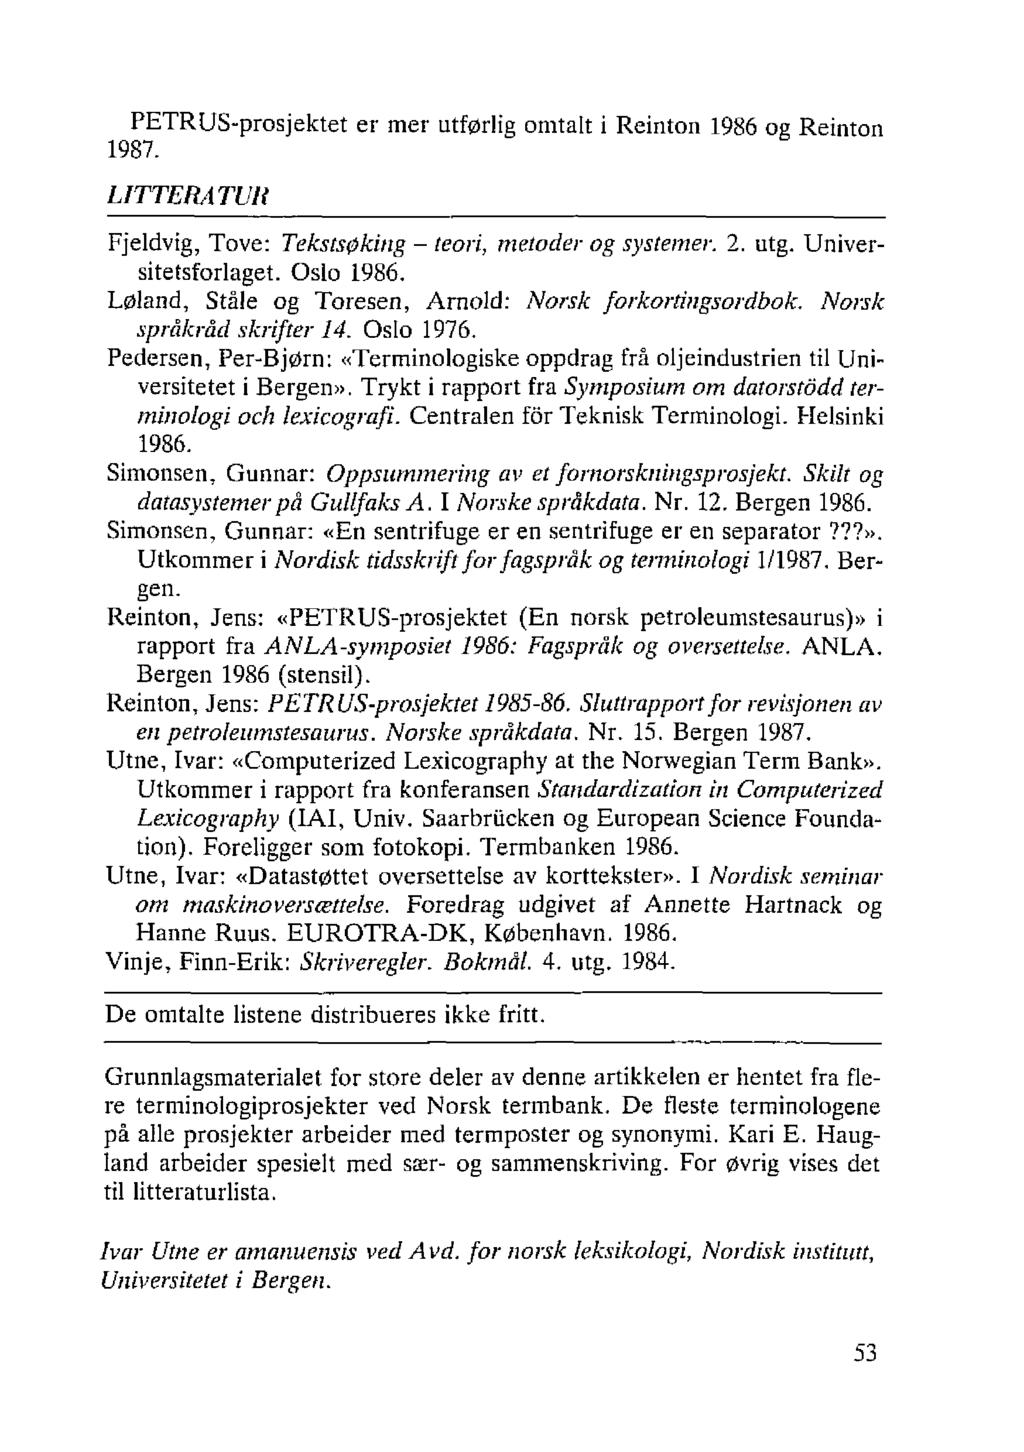 PETRUS-prosjektet er mer utførlig omtalt i Reinton 1986 og Reinton 1987. LITTERATUR Fjeldvig, Tove: Tekstsøking - teori, metoder og systemer. 2. utg. Universitetsforlaget. Oslo 1986.